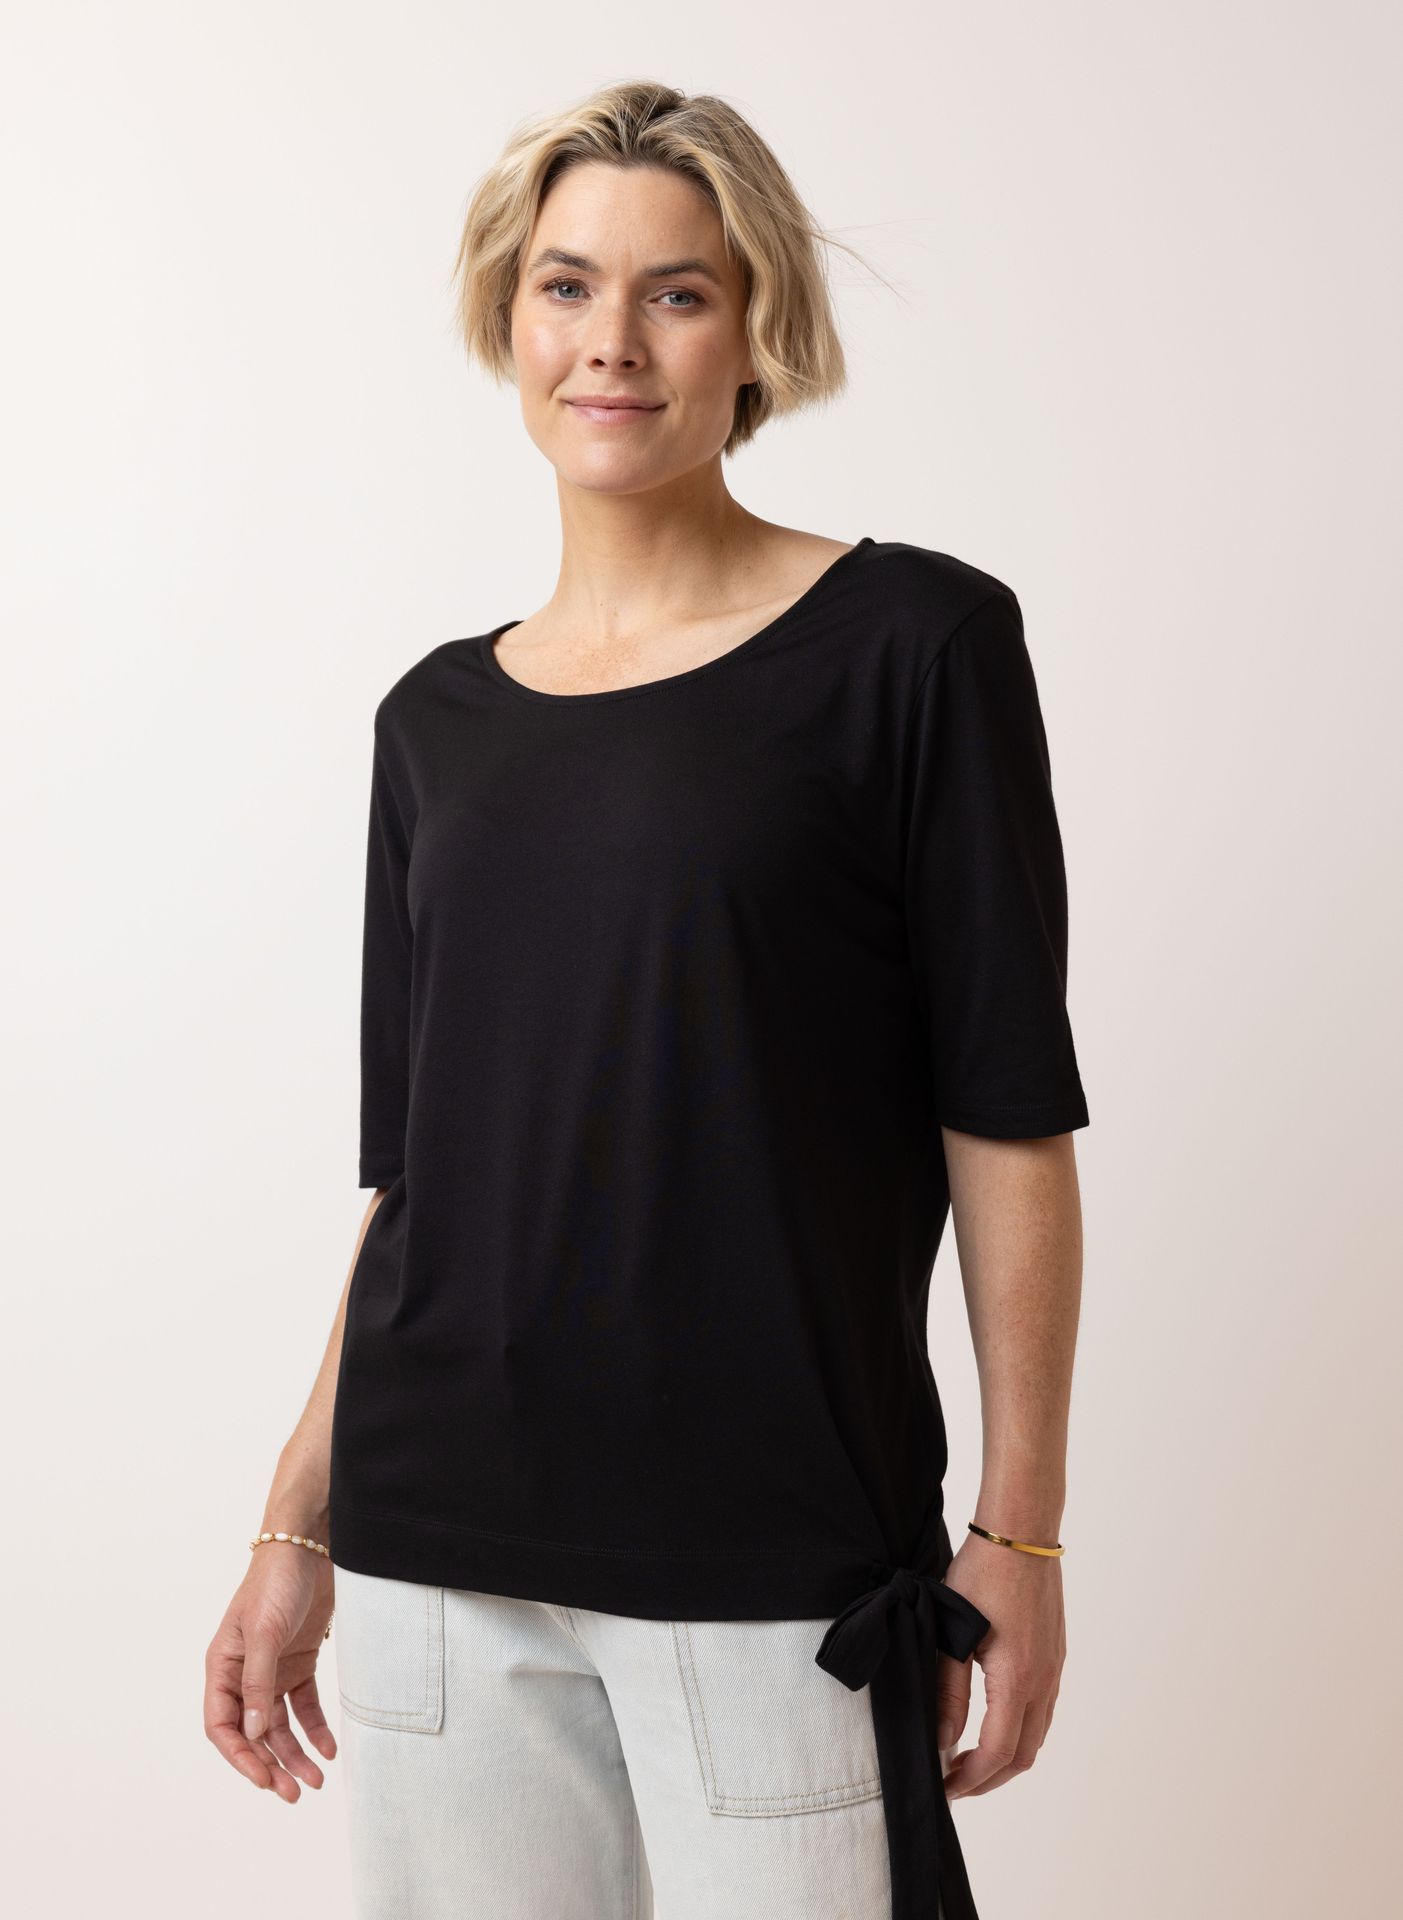 Norah Zwart shirt met strik black 209993-001